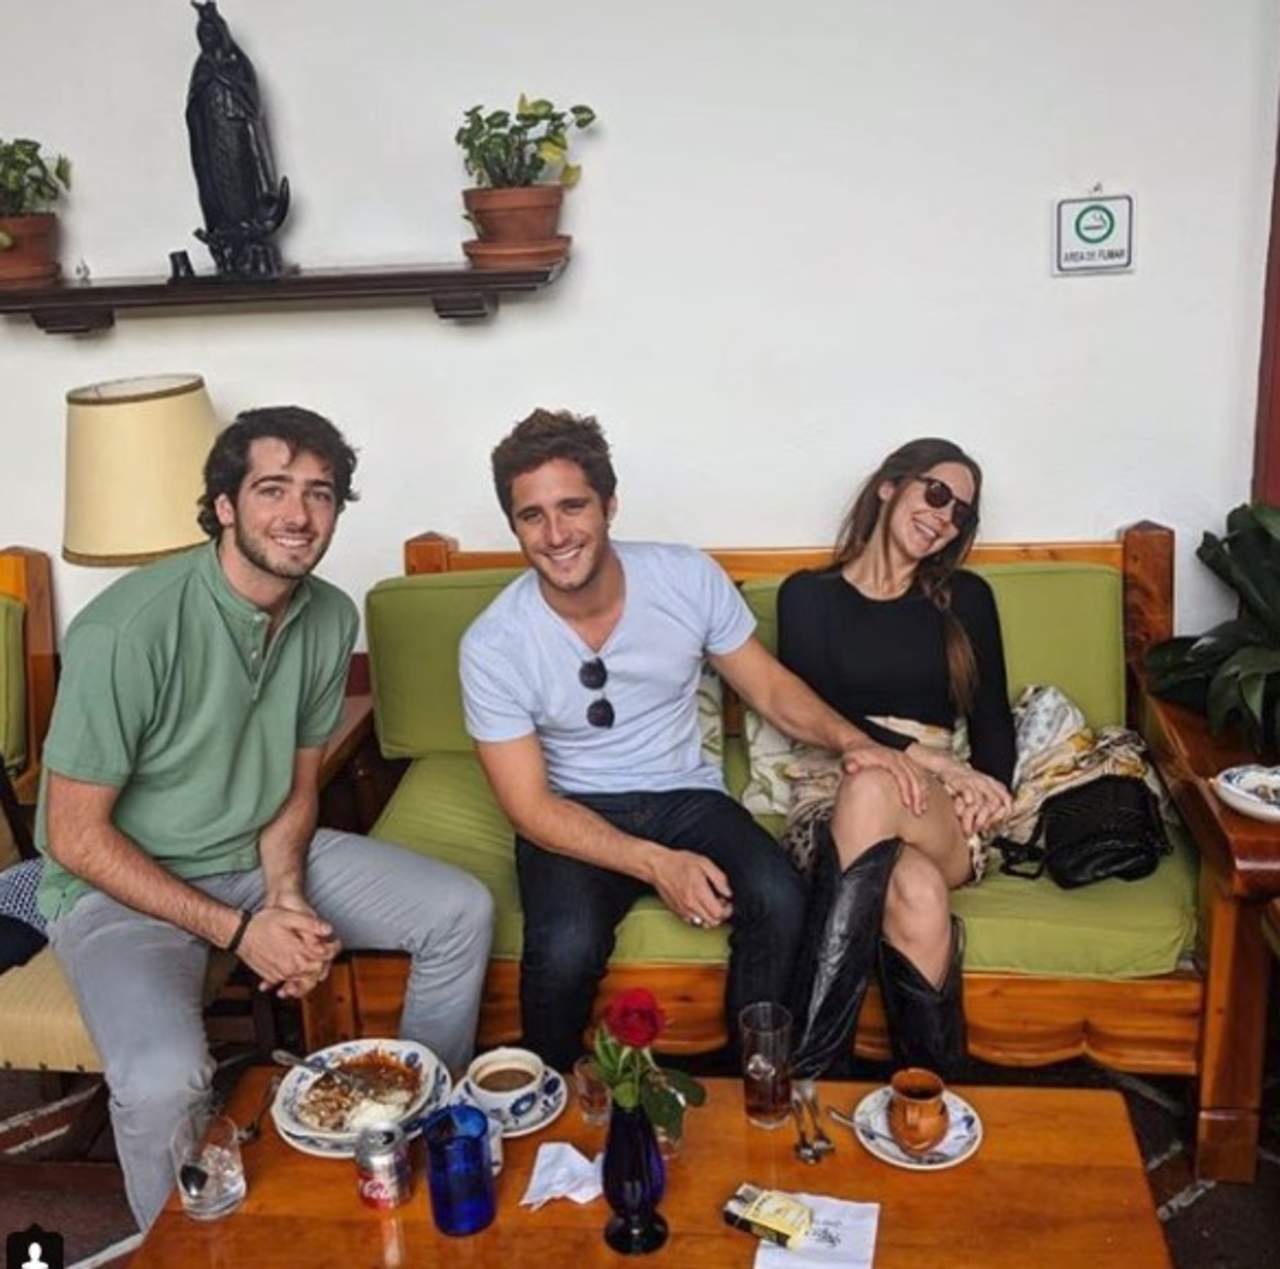 Hace un día, en la cuenta de Instagram de Xavier Noval, quien se define como fisioculturista, se publicó una imagen en la que aparecen muy sonrientes los actores de la serie de Luis Miguel. (ESPECIAL)